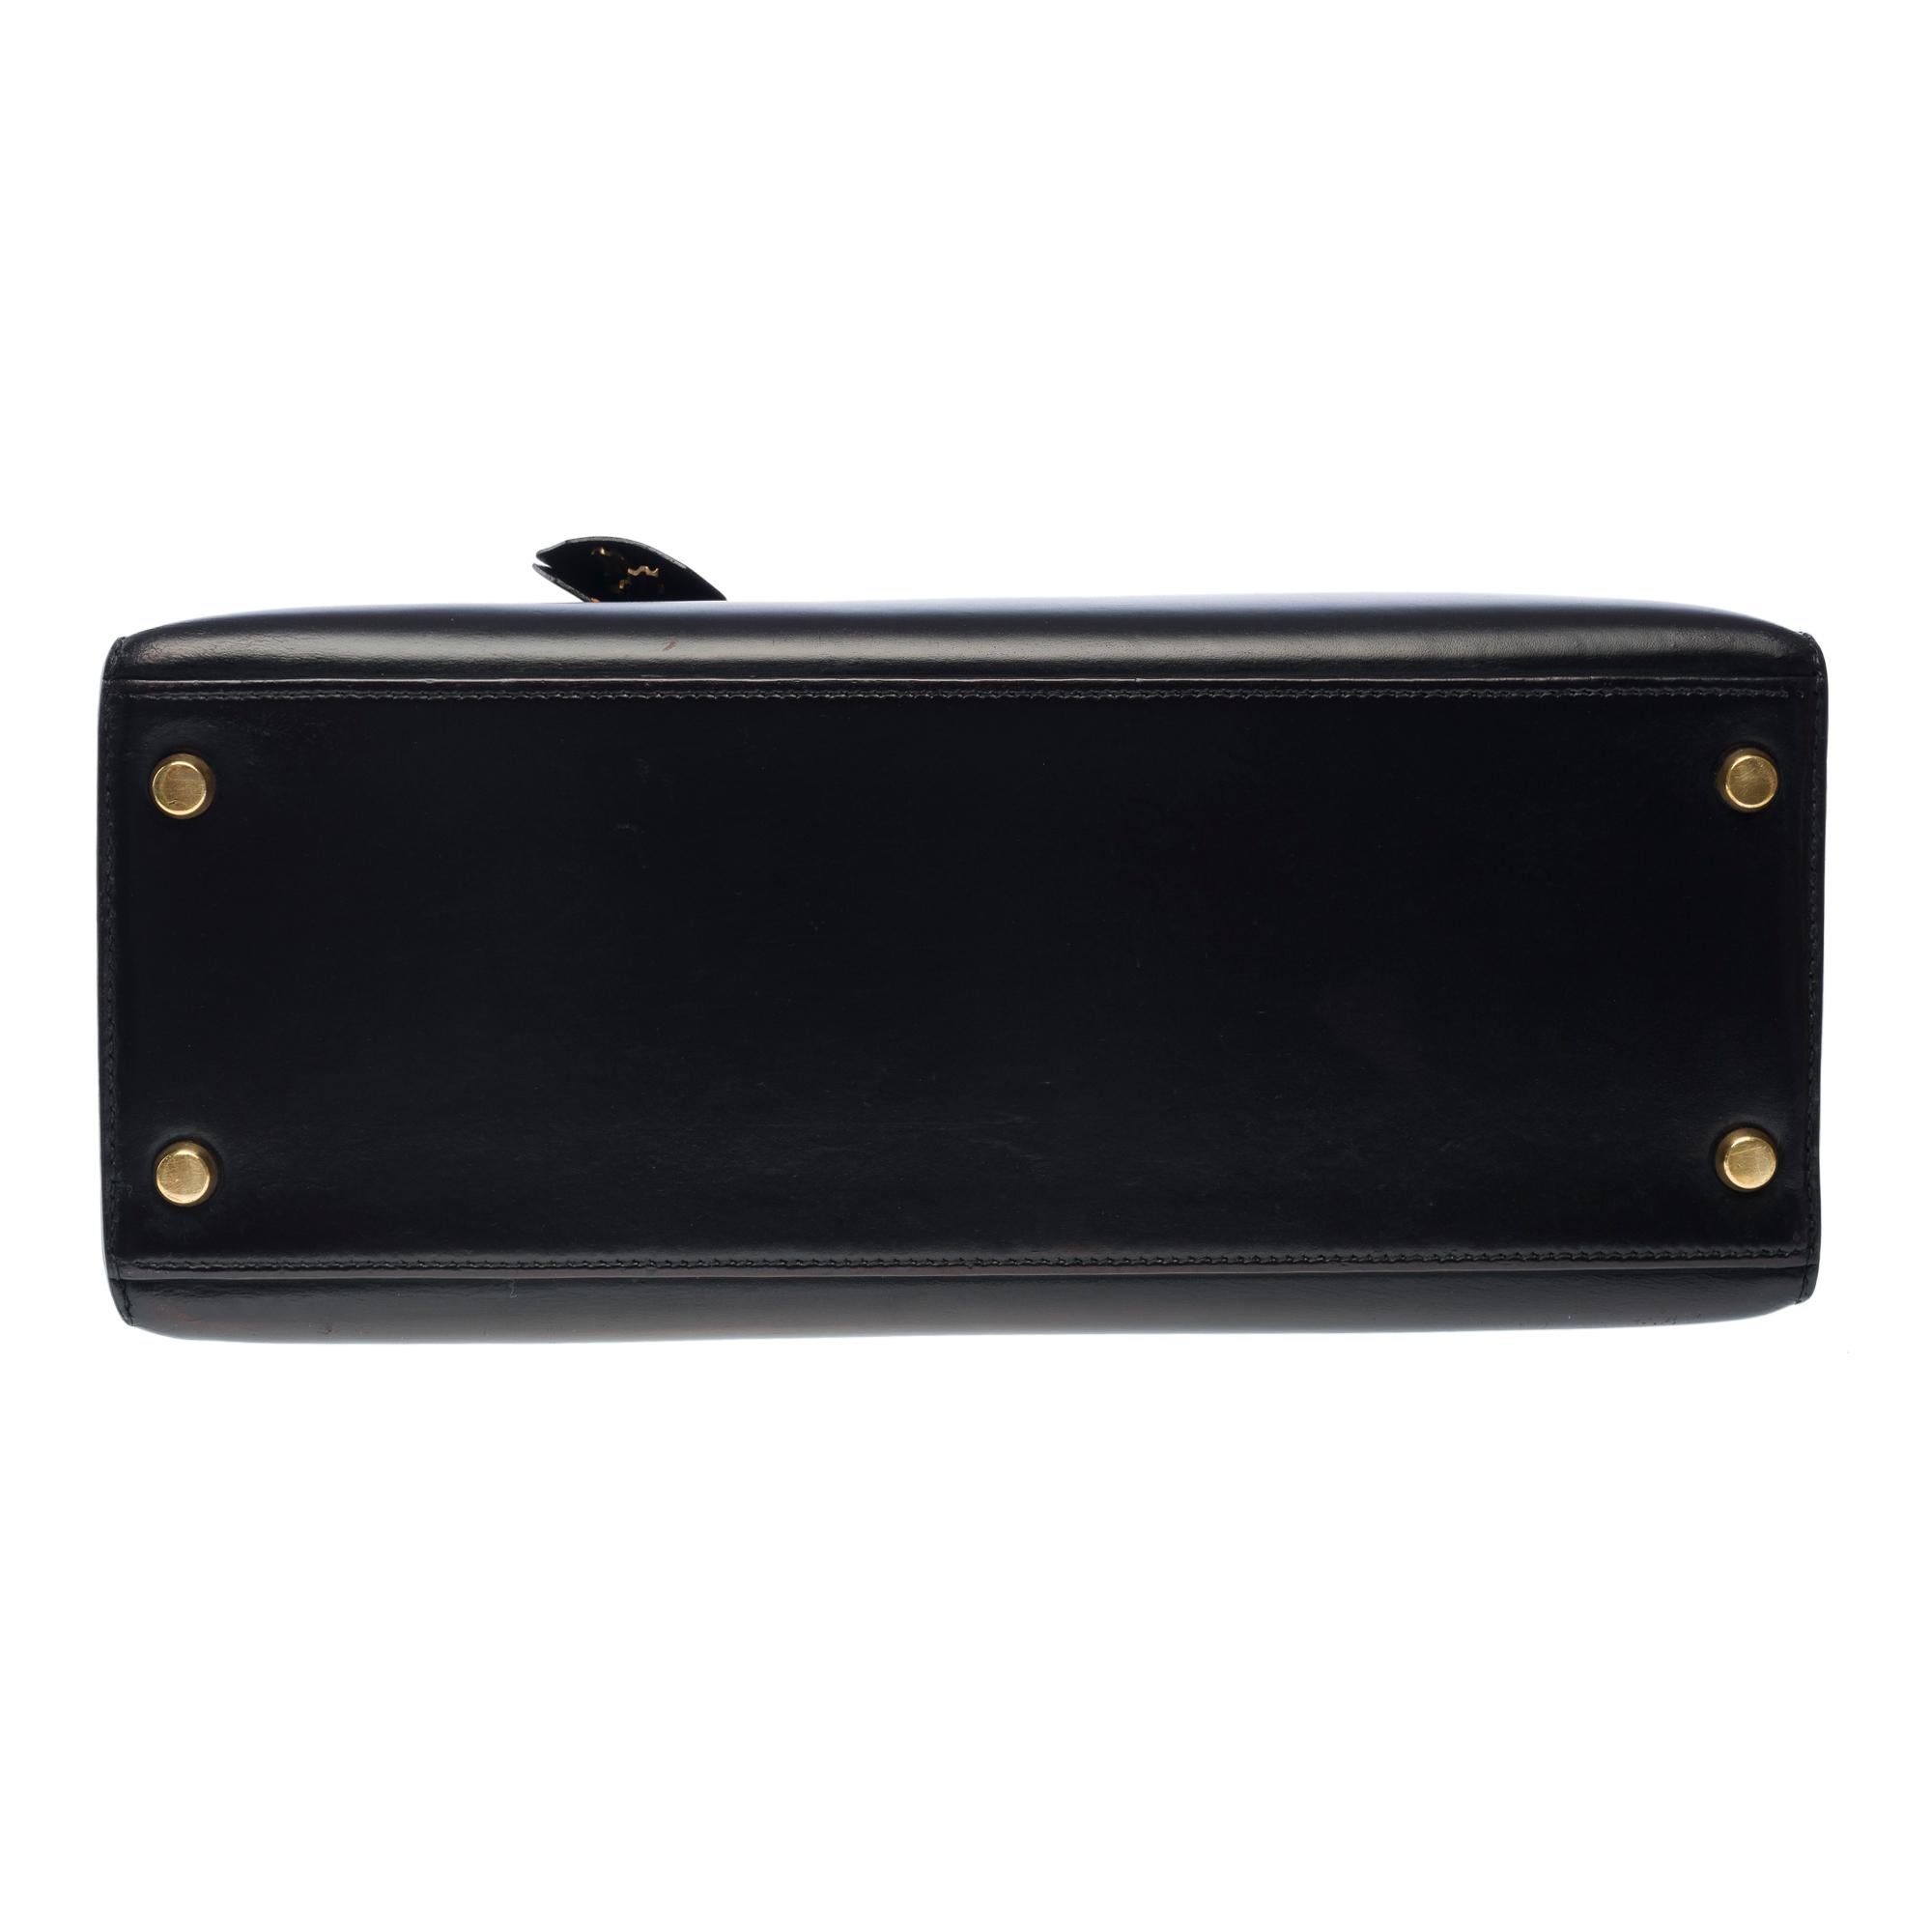 Hermes Kelly 28 sellier handbag in Black box calfskin leather, GHW For Sale 6